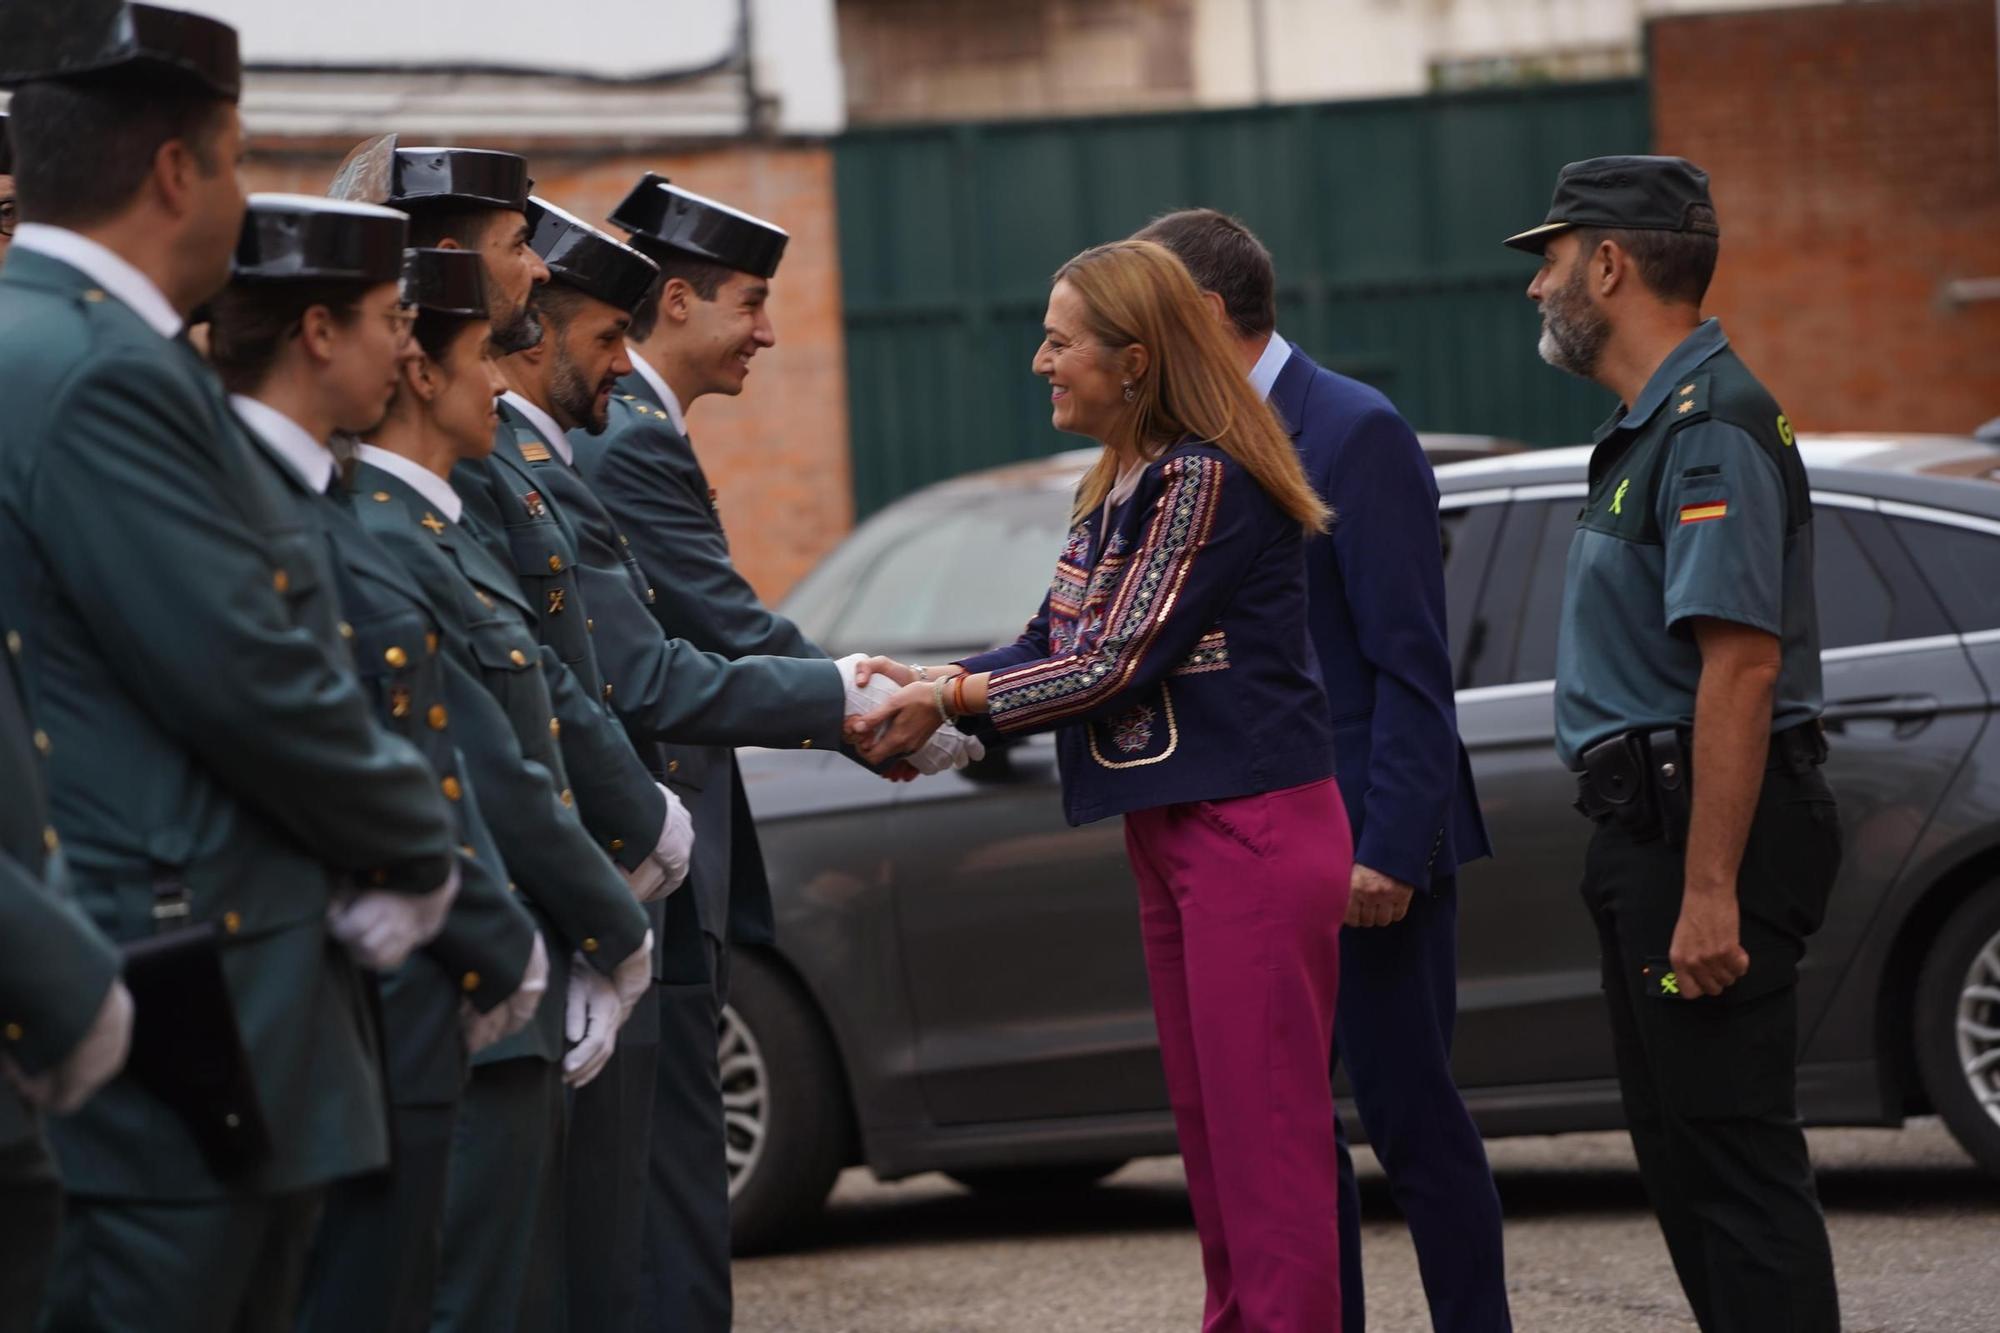 GALERÍA | Zamora recibe a los nuevos agentes de la Guardia Civil